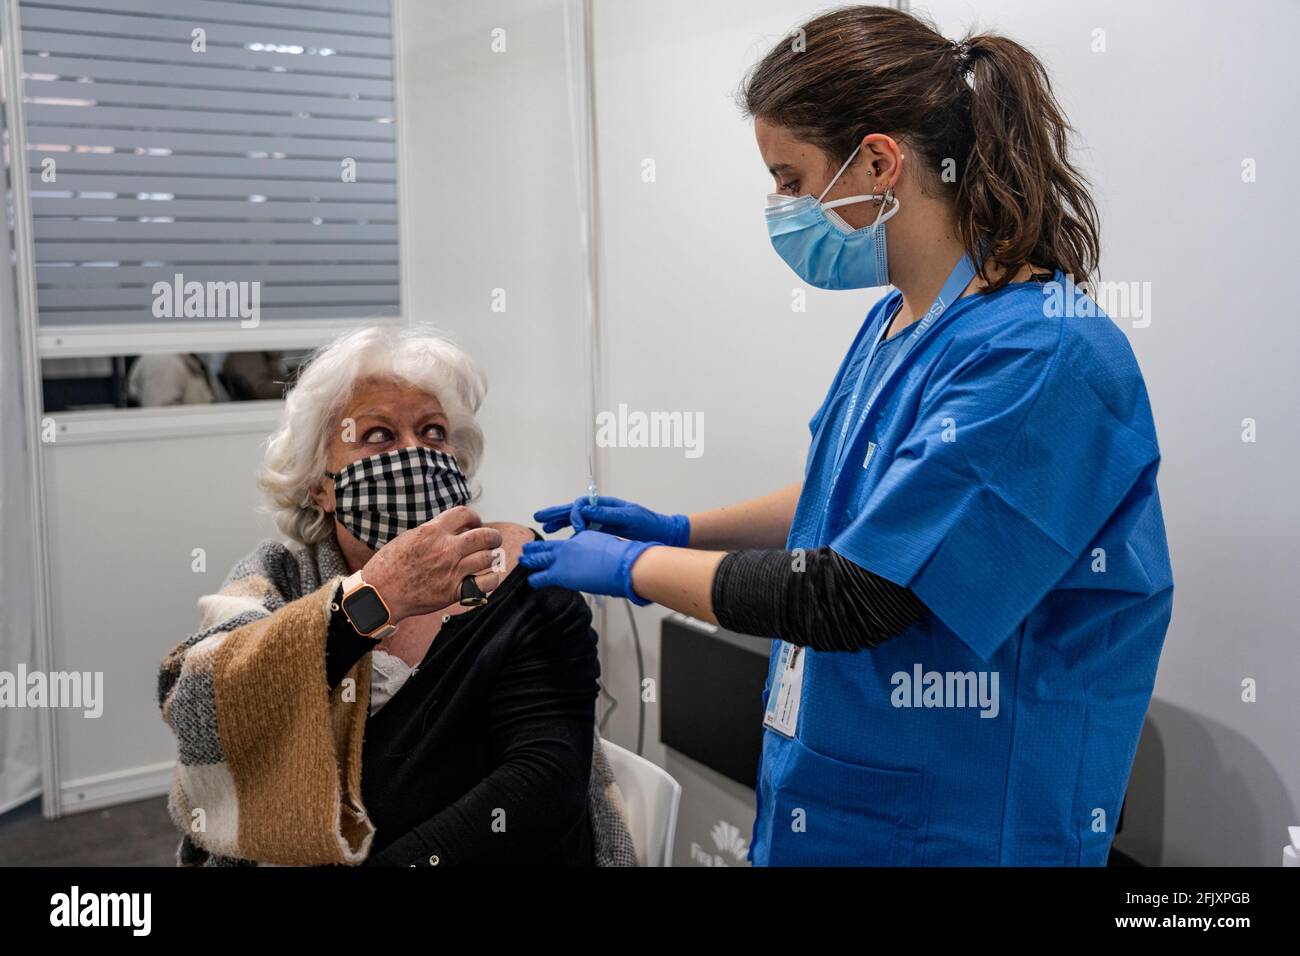 Barcelone, Espagne. 26 avril 2021. Une femme reçoit la vaccination à la Fira de Barcelona, en Espagne, le 26 avril 2021. La Fira de Barcelona a ouvert ce lundi comme principal espace de vaccination contre le COVID-19 en Catalogne. Crédit : Joan Gosa/Xinhua/Alay Live News Banque D'Images